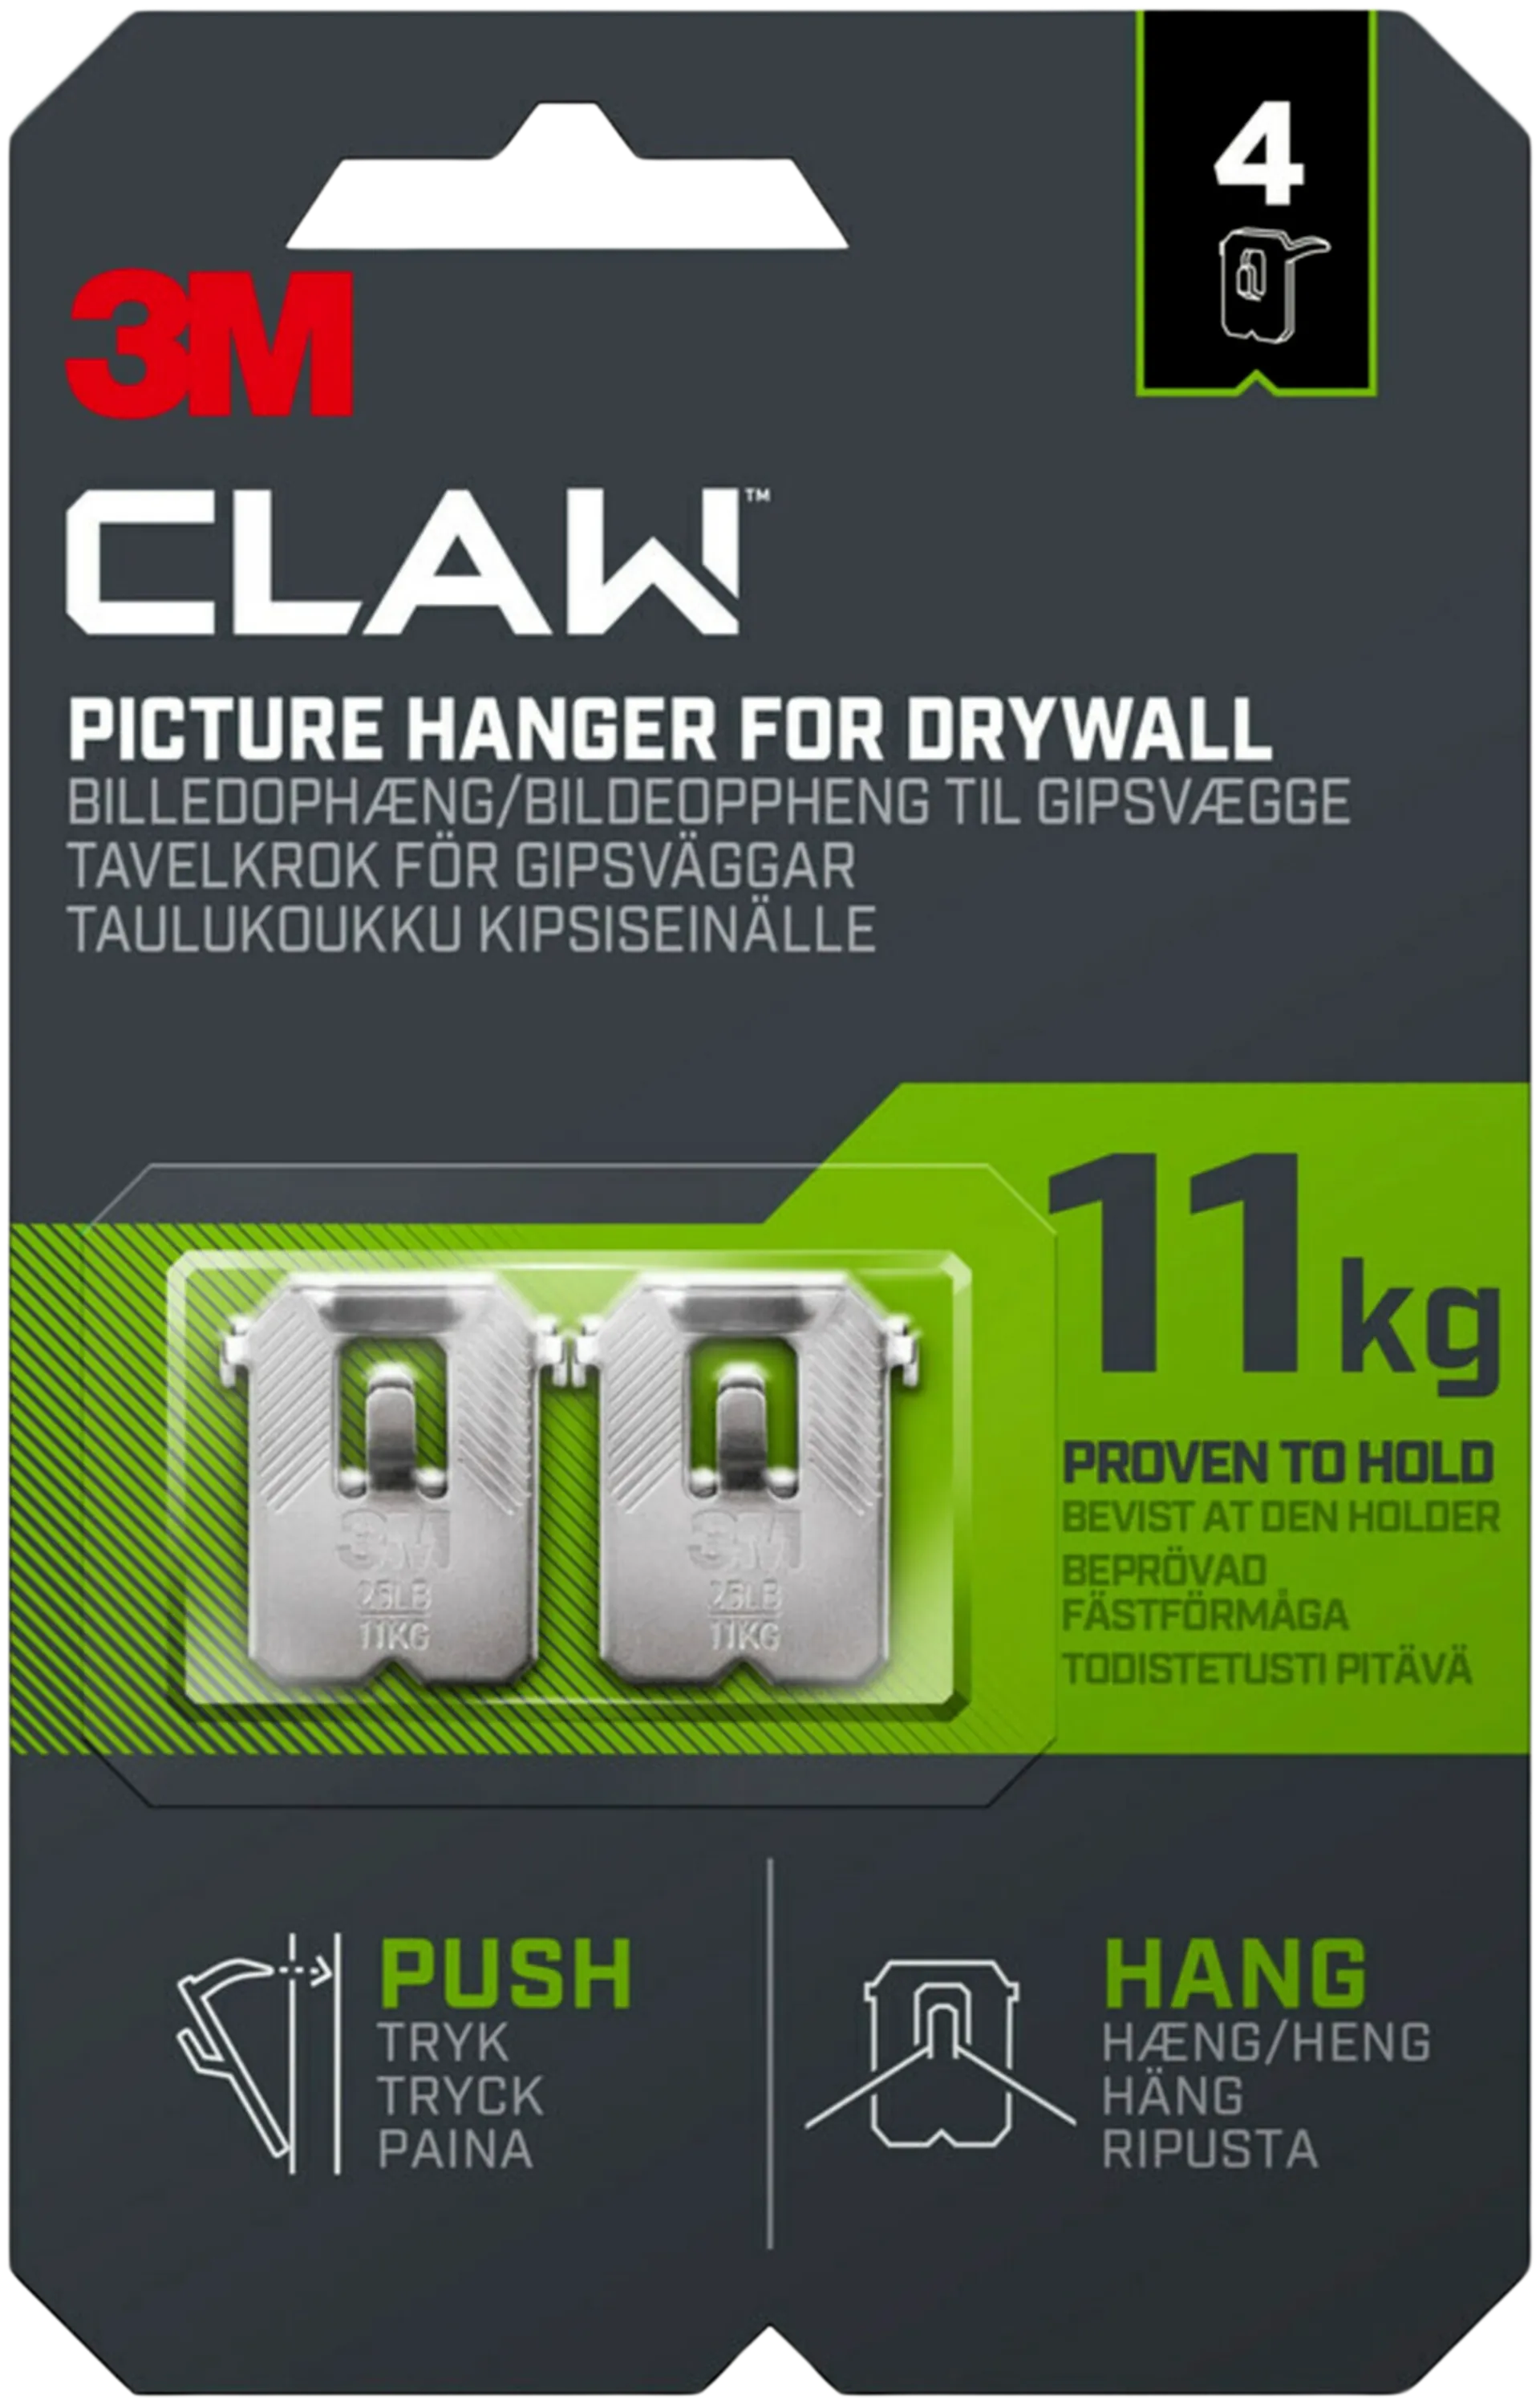 3M CLAW™-taulukoukku kipsilevylle, 11 kg 3PH11-4UKN, 4 ripustuskoukkua - 1